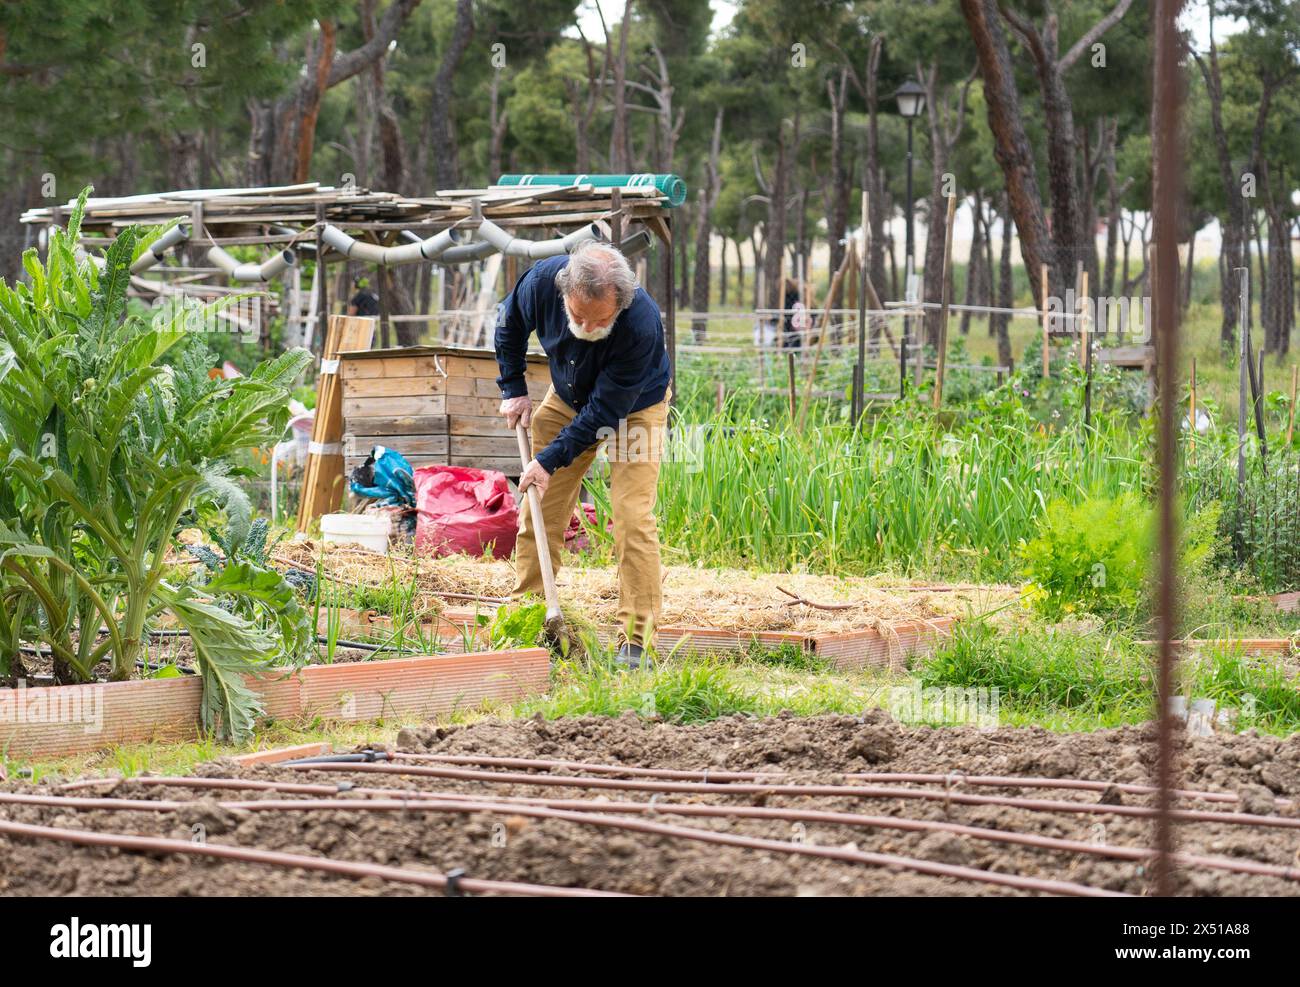 Elderly man working in a community garden Stock Photo